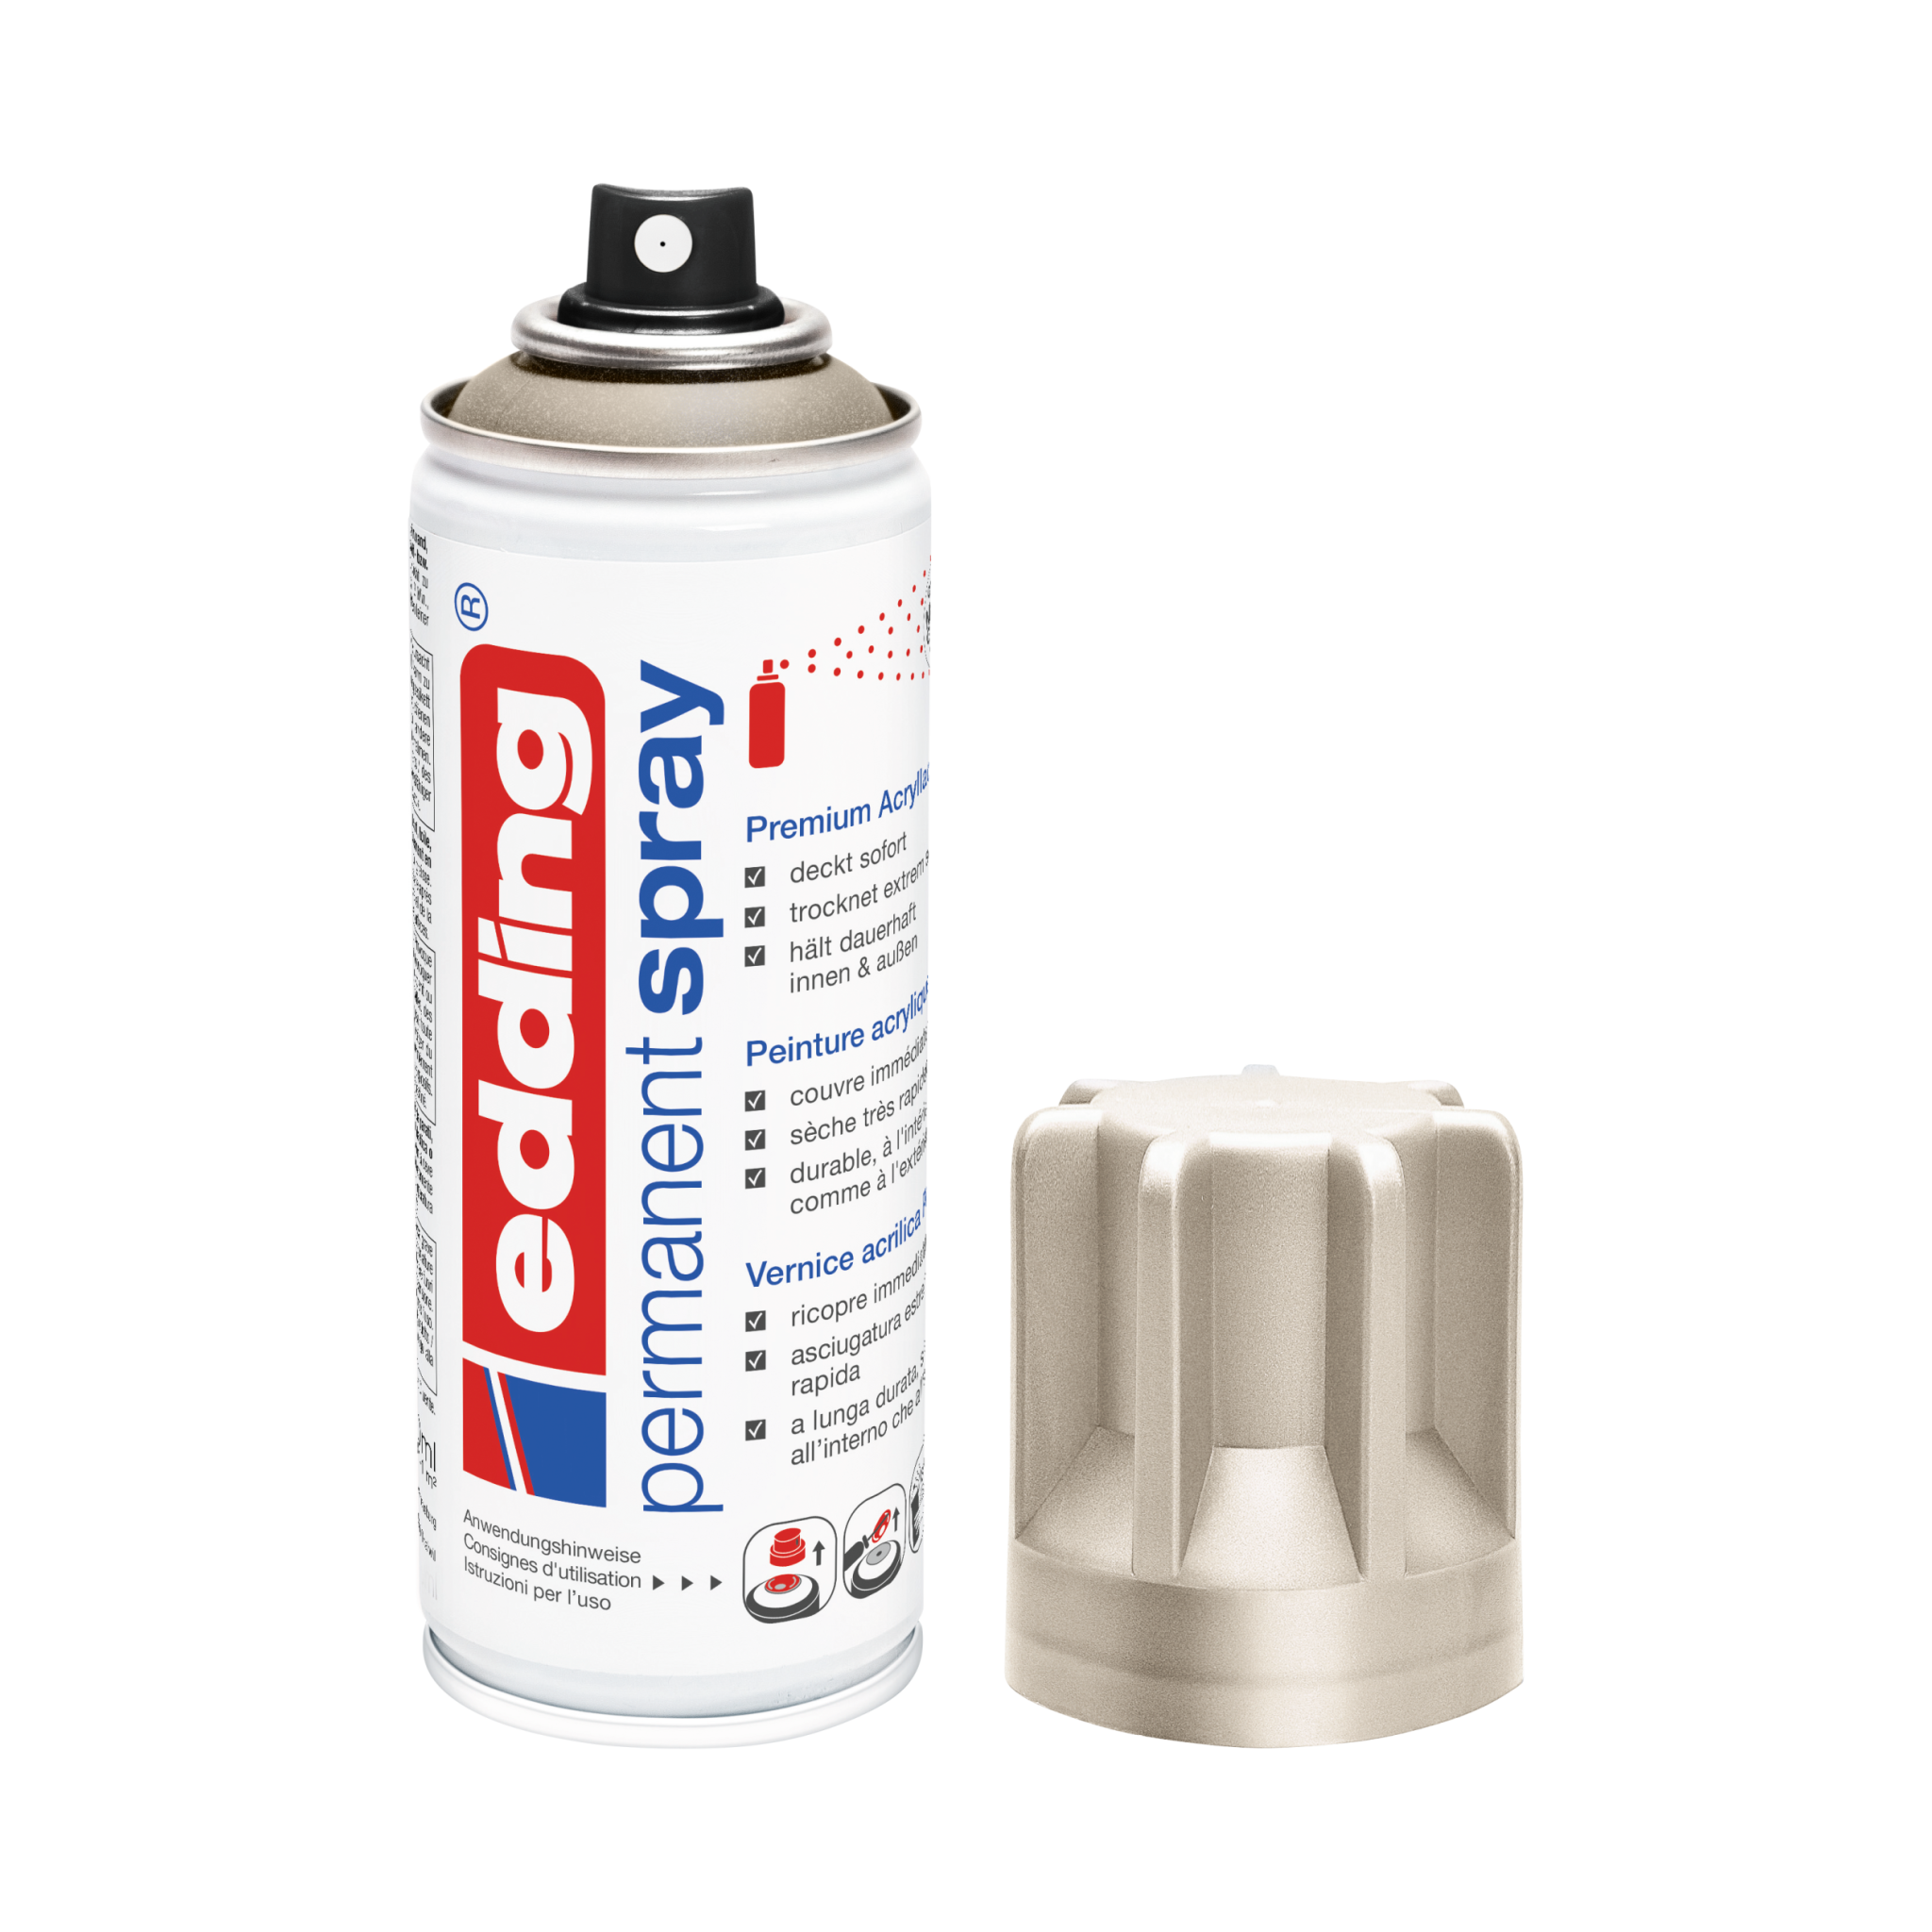 Satz mit ersetztem Produkt:

Eine Dose edding 5200 Permanentspray Metallic Acryllack mit abgenommener Kappe, isoliert auf weißem Hintergrund.